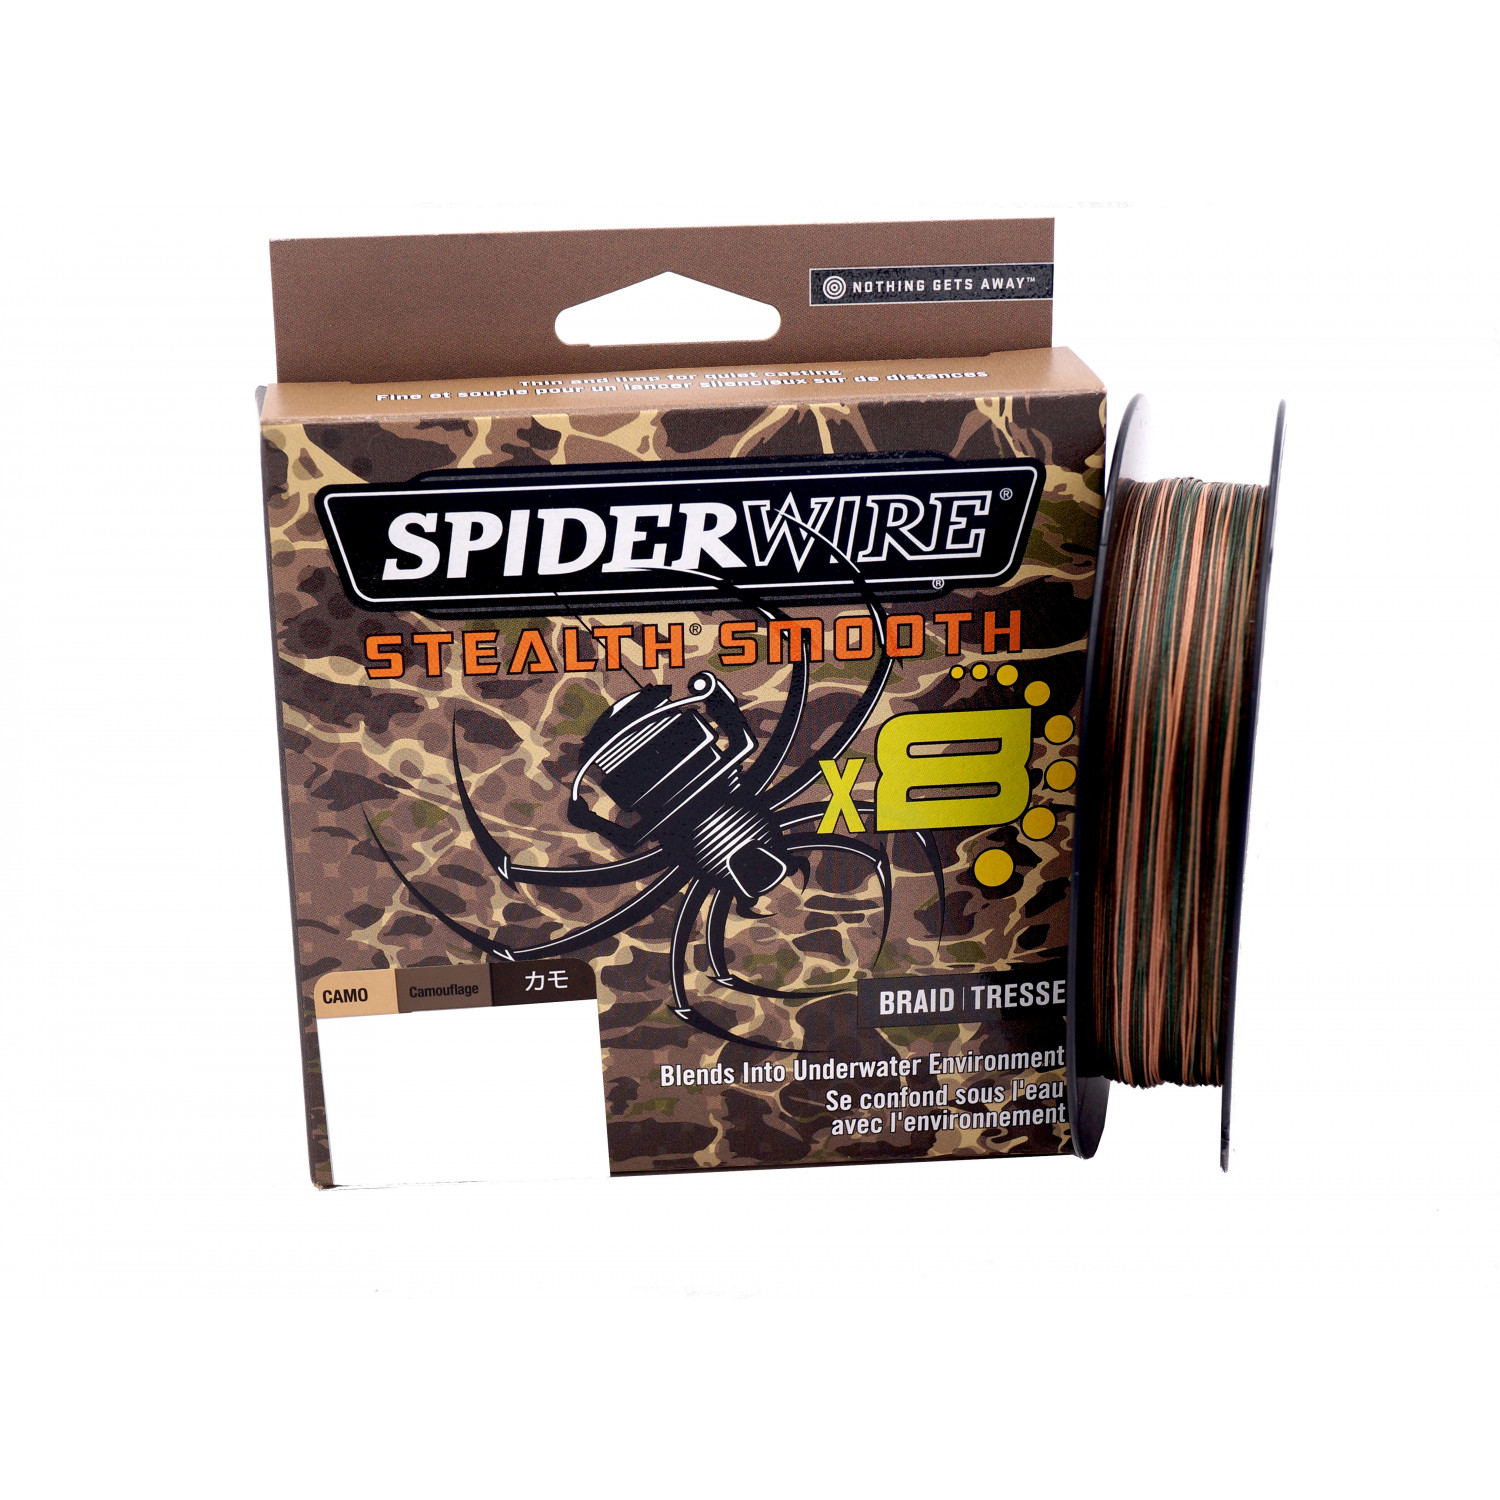 SPIDERWIRE SpiderWire Stealth braided fishing line camouflage 300 1515760 00